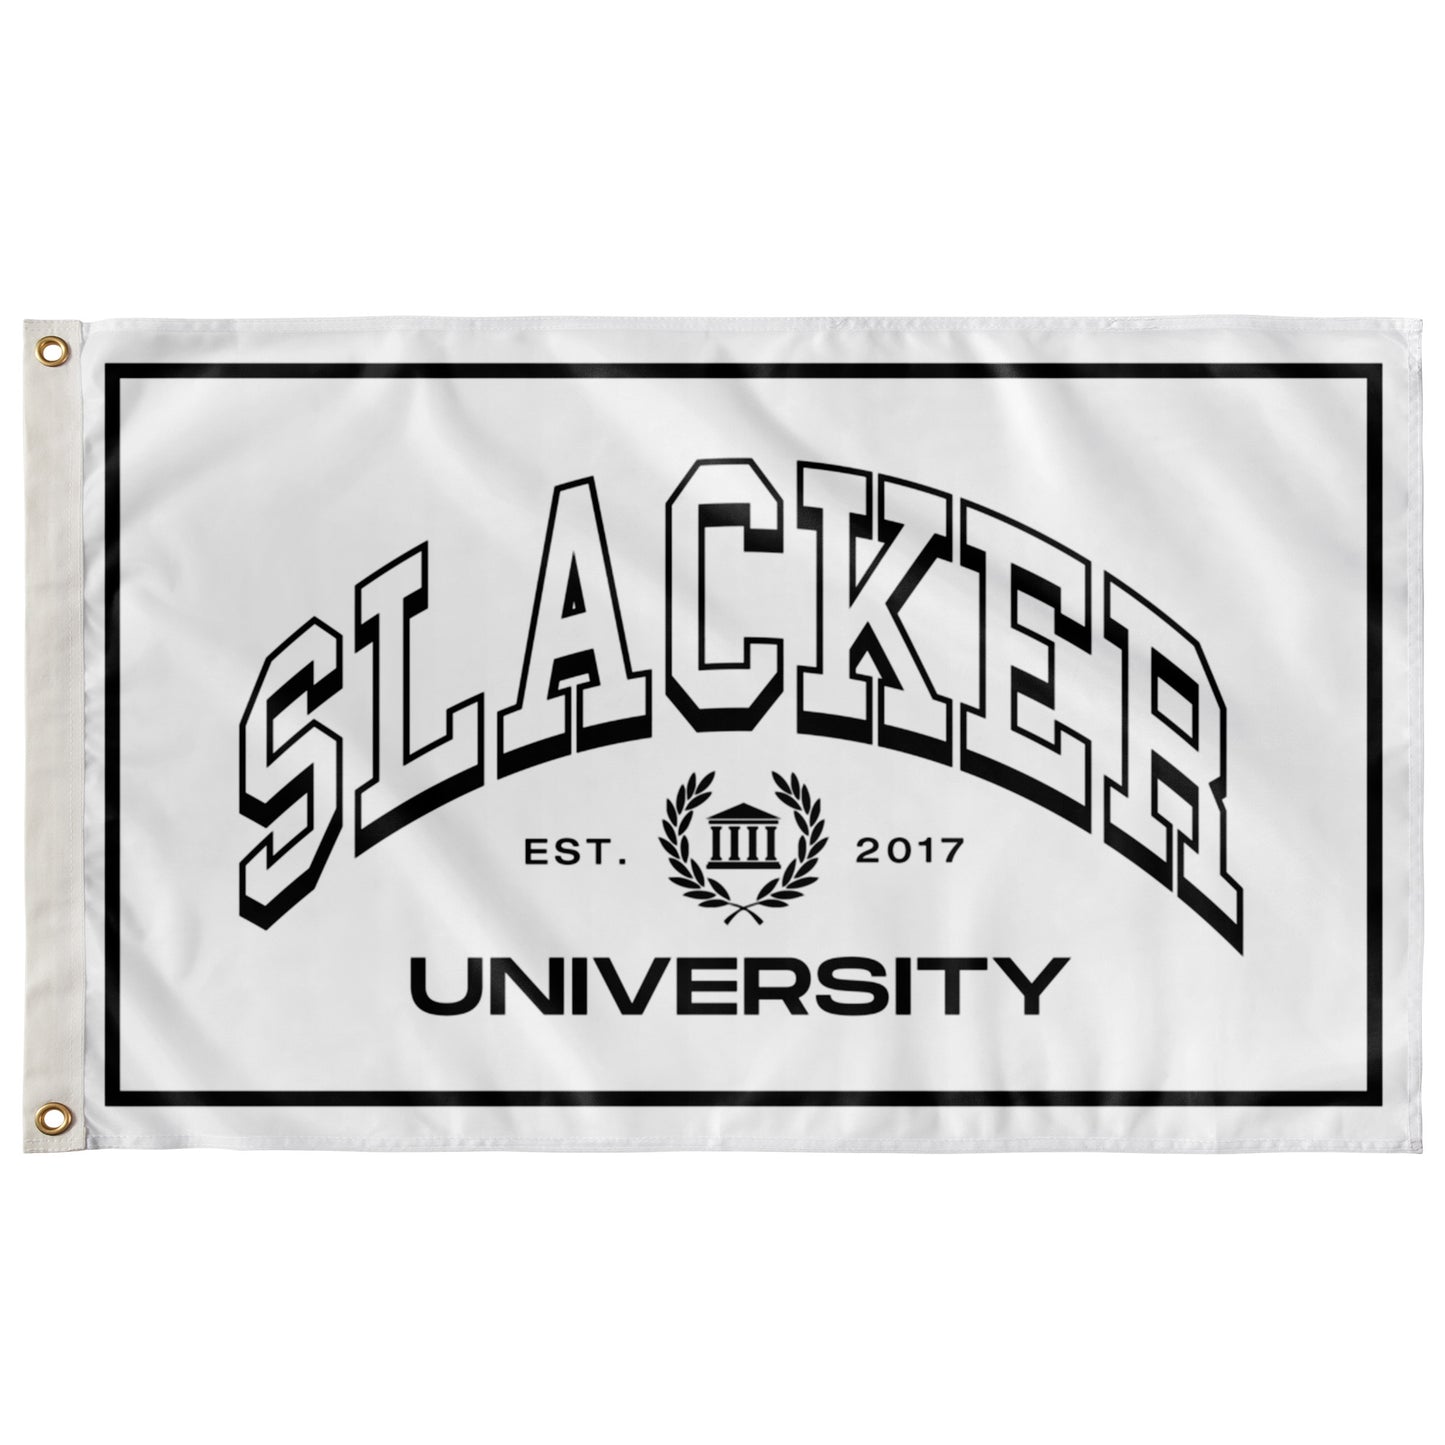 Slacker University Flag